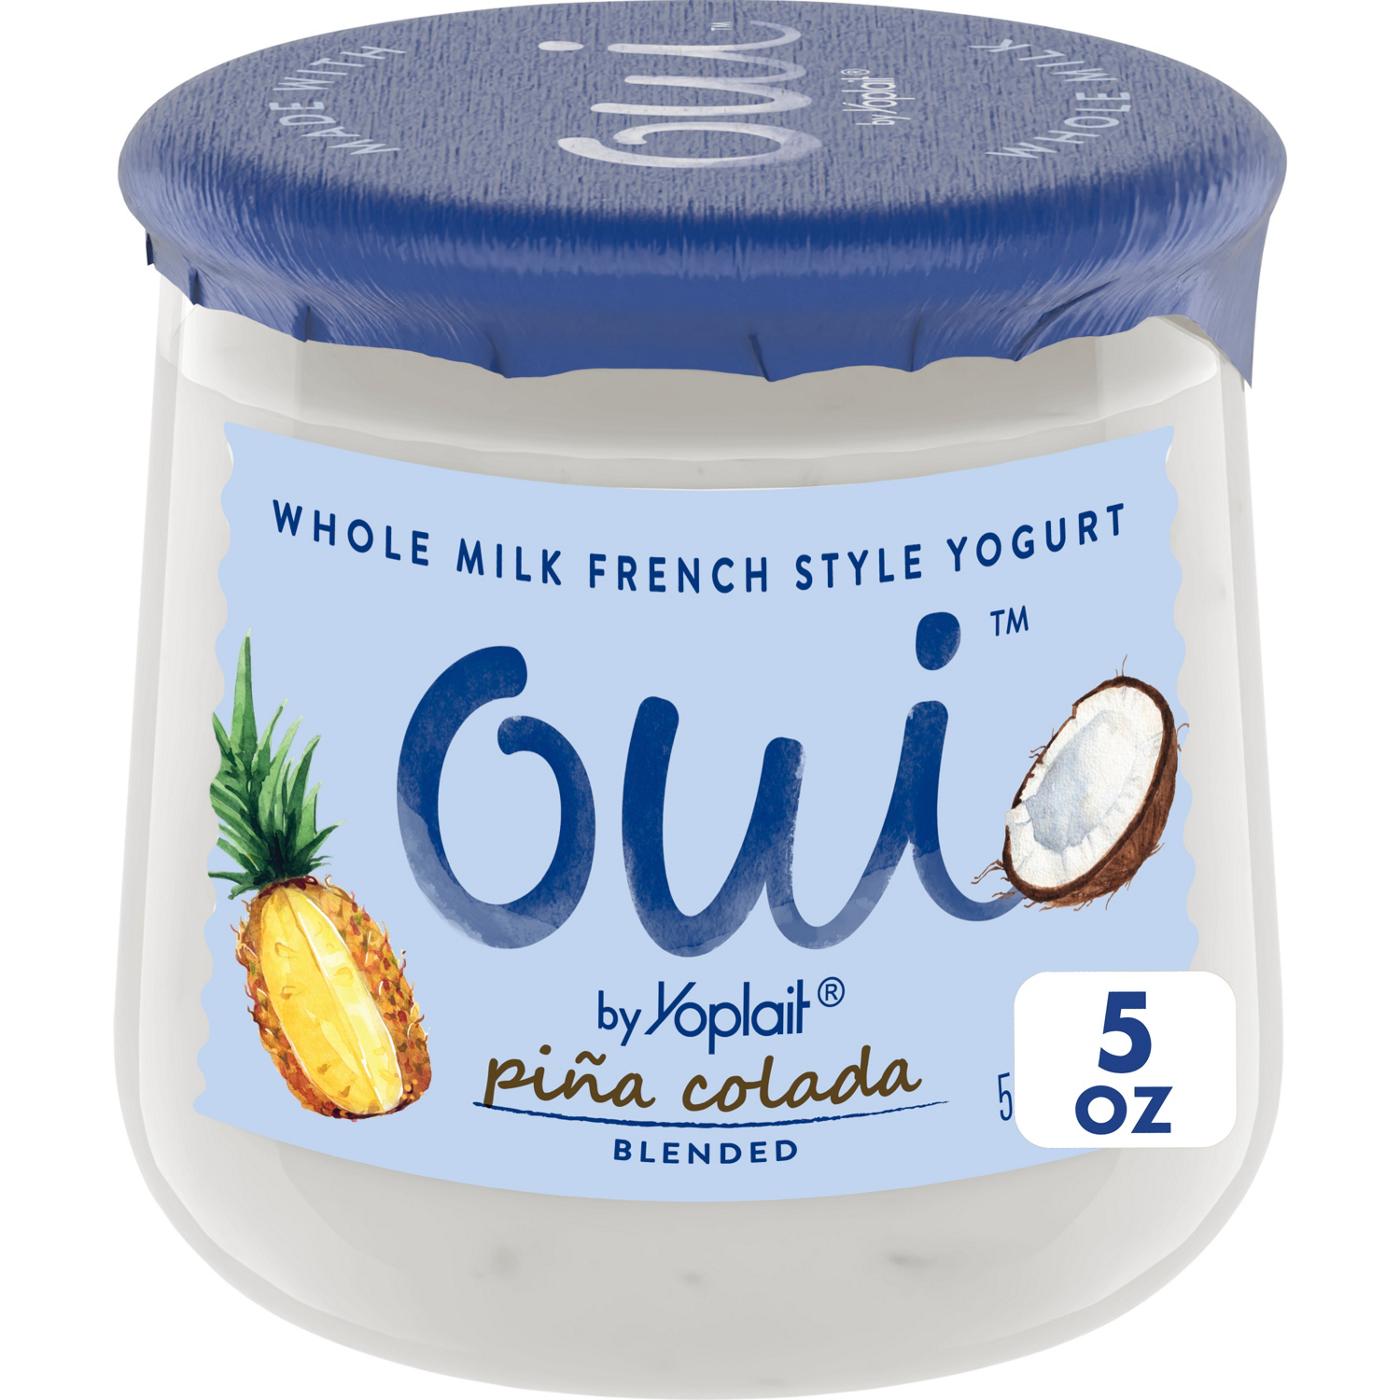 Yoplait Oui Pina Colada Whole Milk French Style Yogurt; image 1 of 2